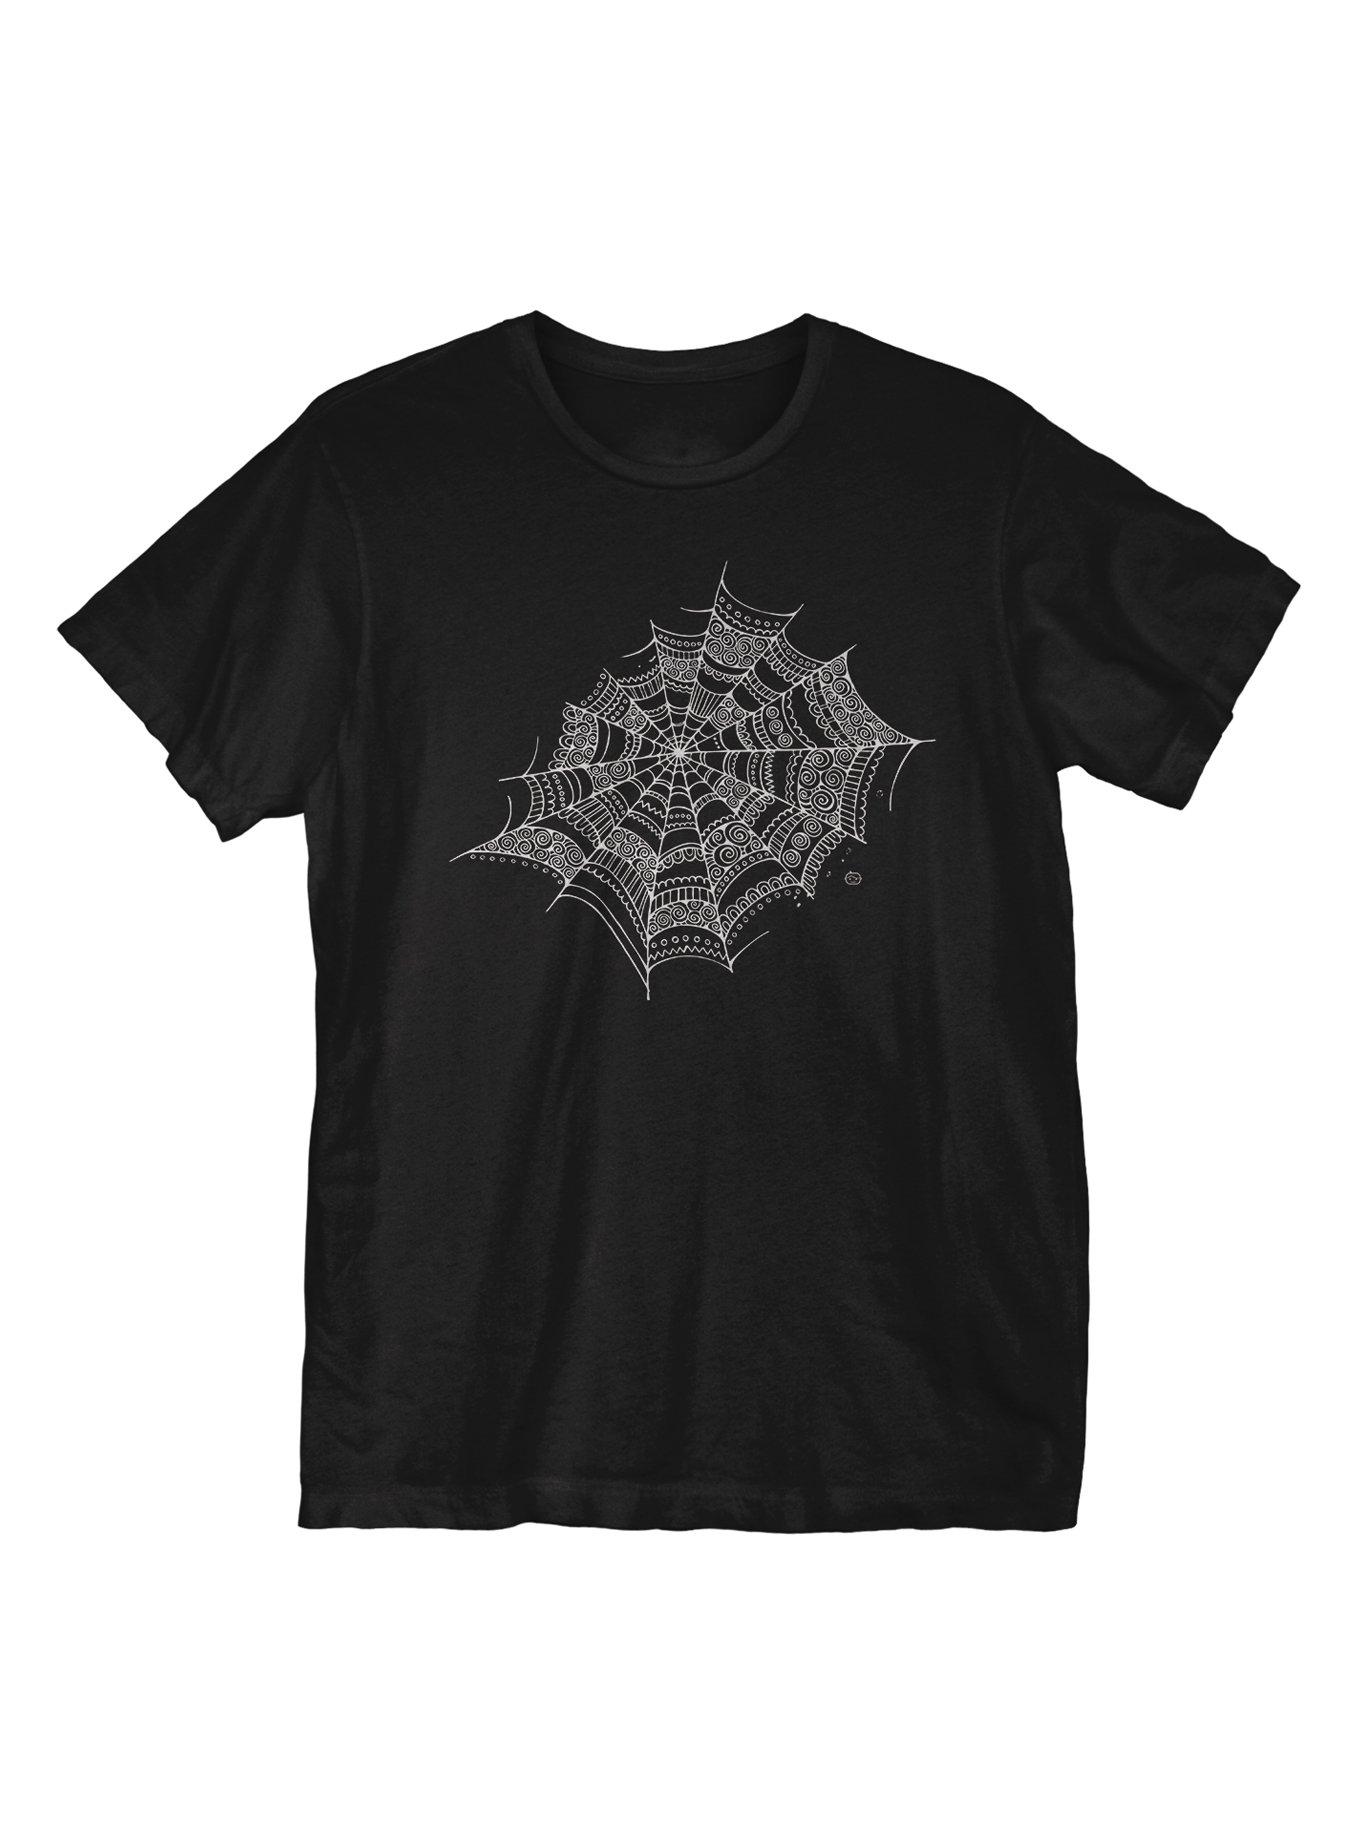 Web of Deciet T-Shirt, BLACK, hi-res